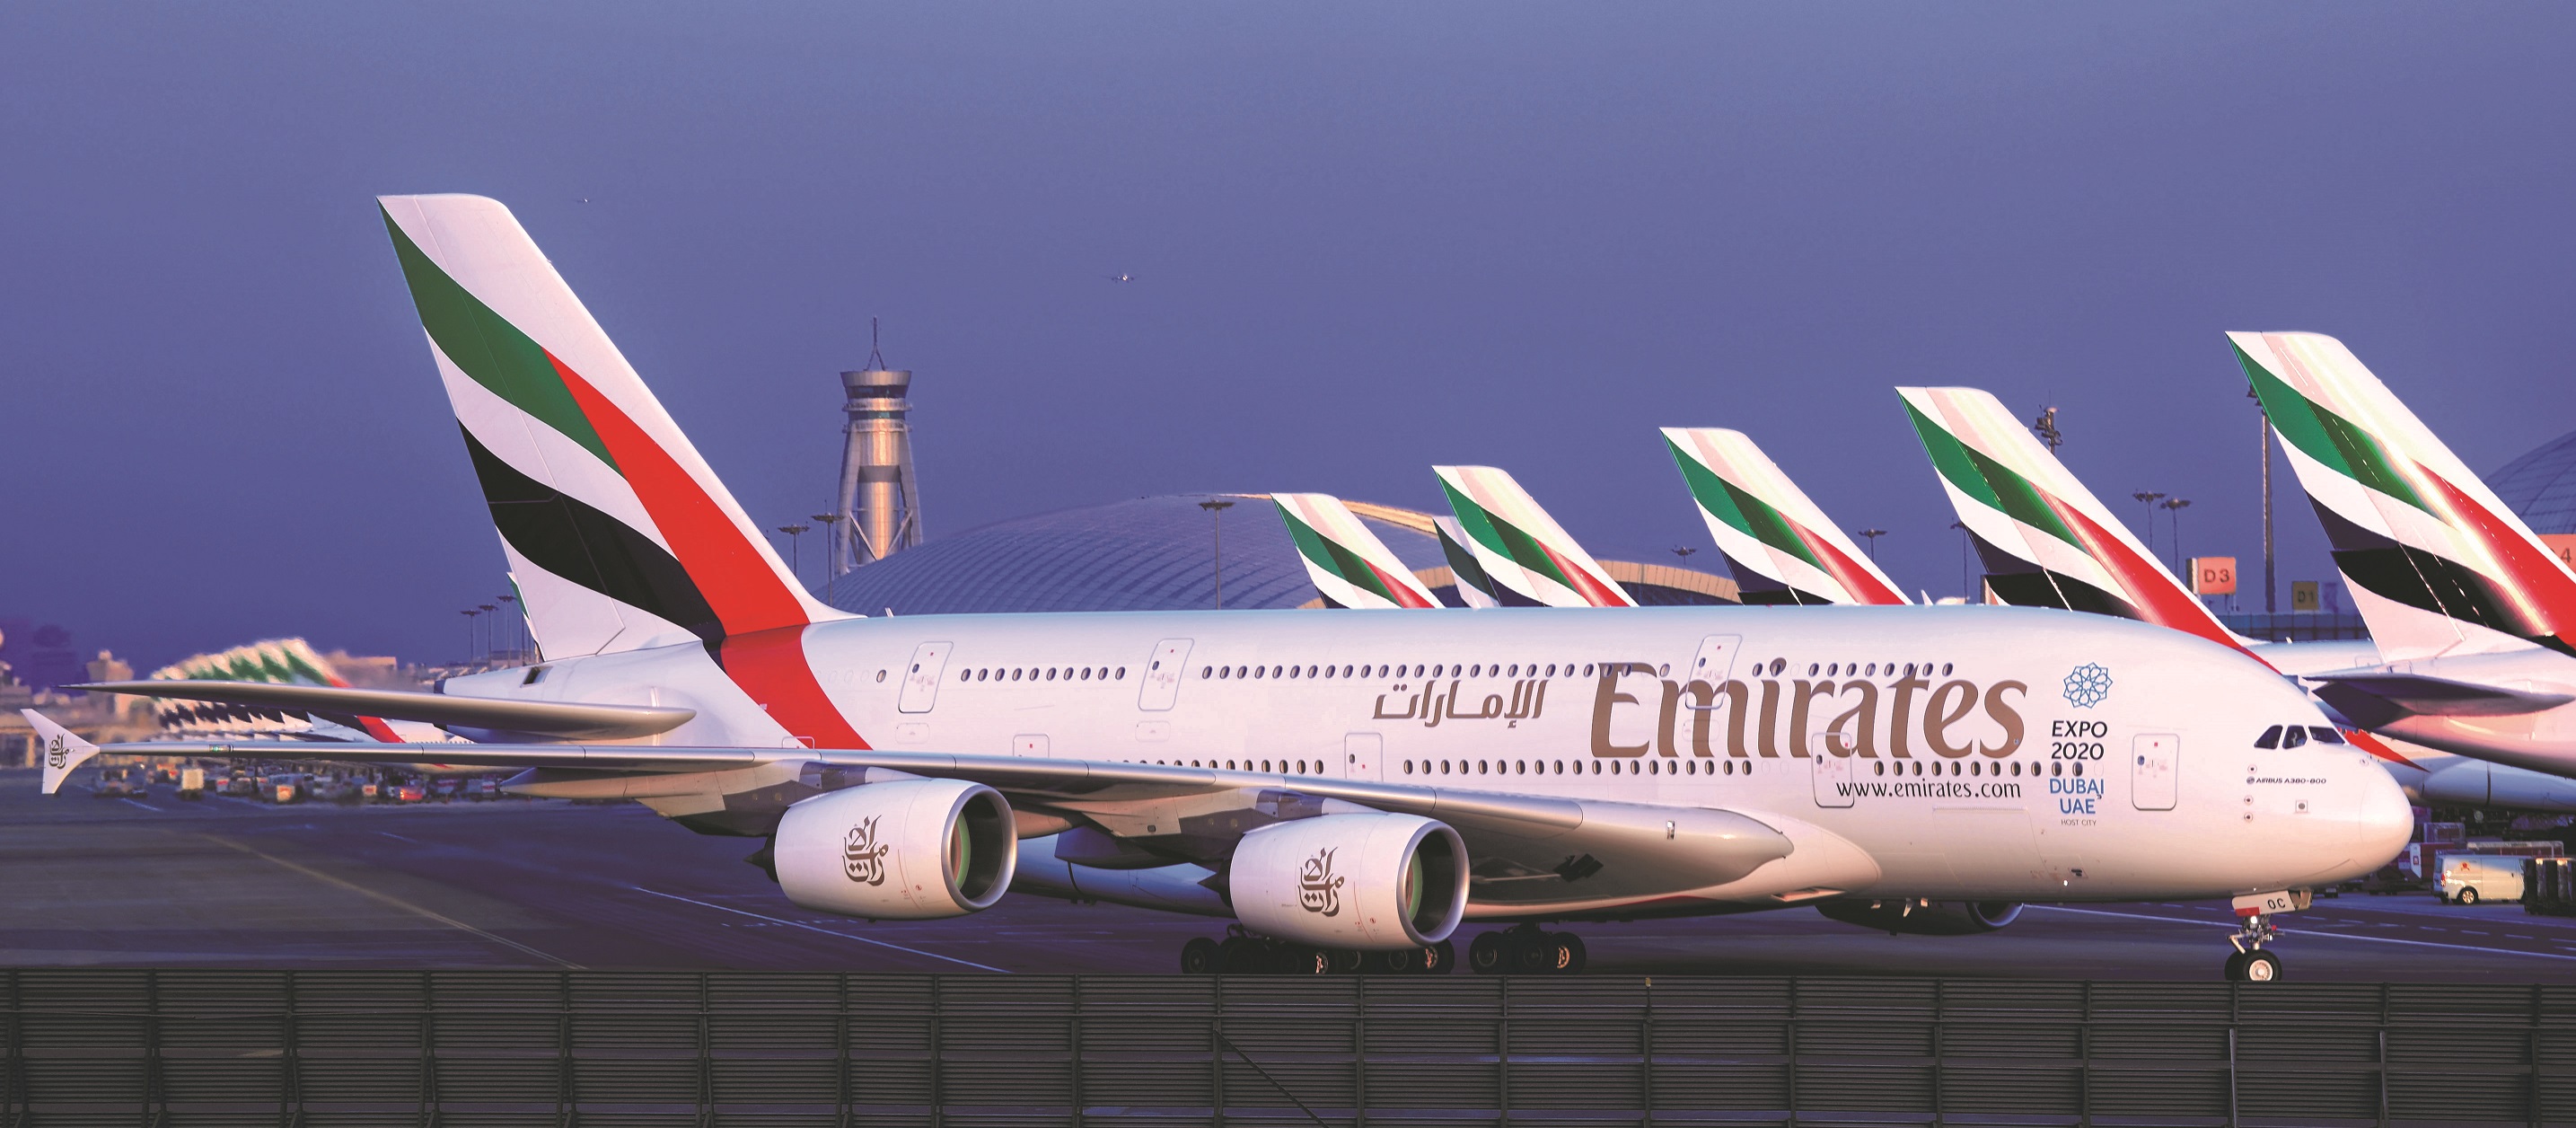 阿联酋航空9月4日起恢复运营迪拜至卢萨卡航班 | TTG China